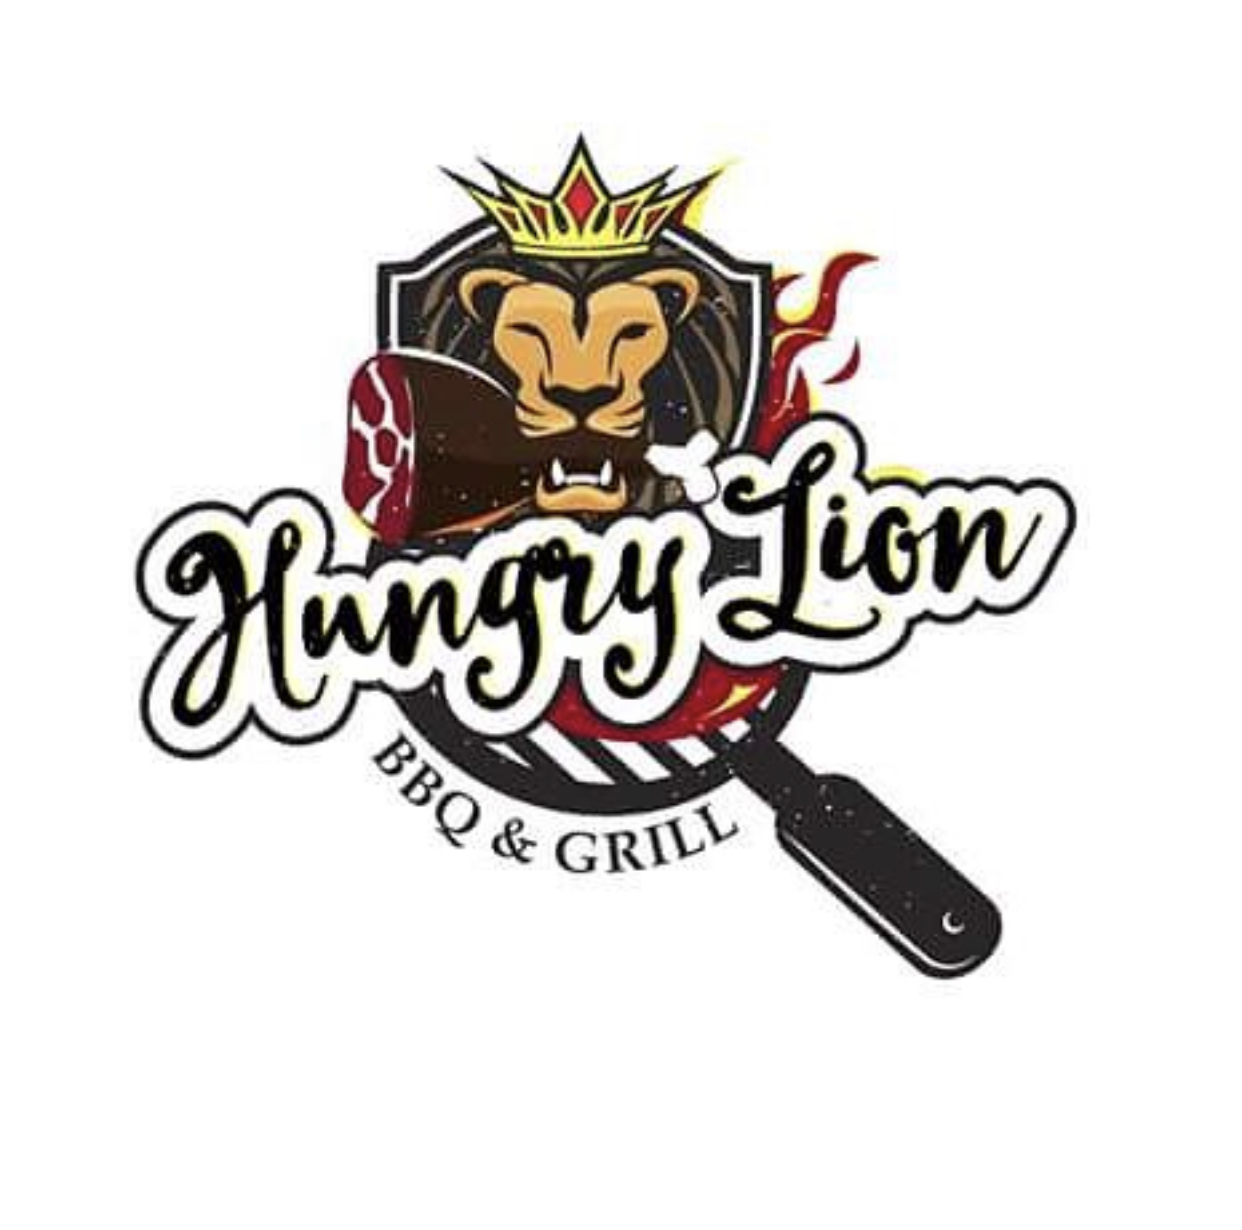 Hungry Lions Bbq Grill-logo.jpg